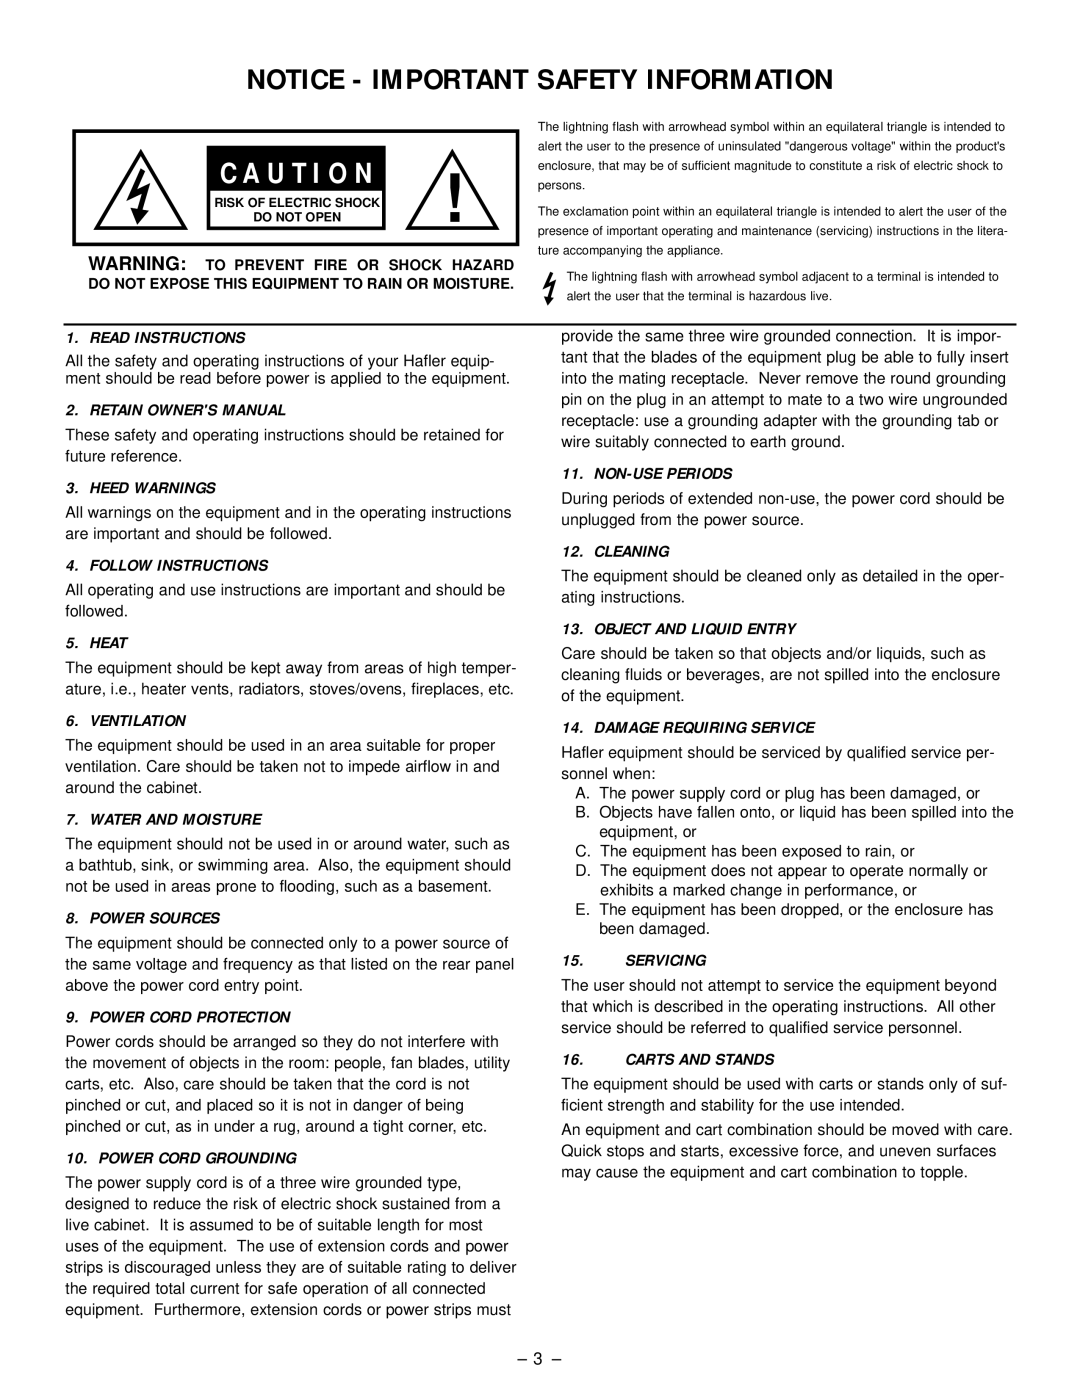 Hafler SR2600, SR2300 owner manual Notice - Important Safety Information, C A U T I O N 